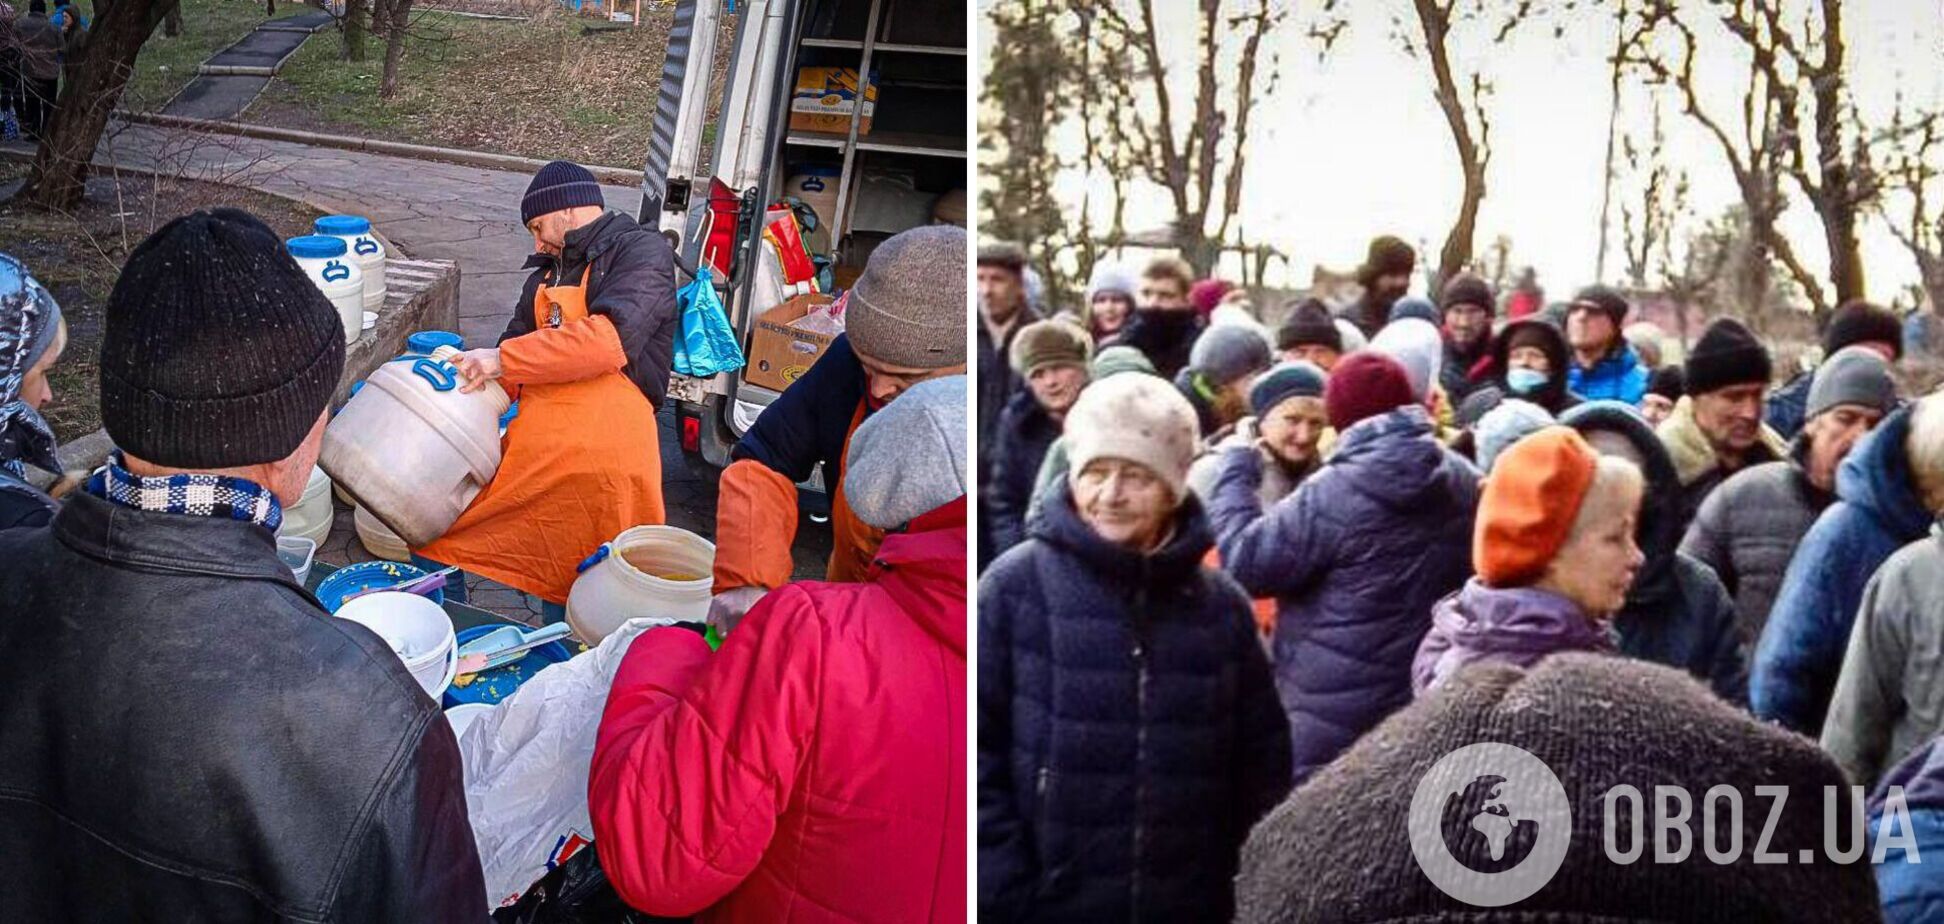 'Мёрзнут часами, чтобы получить еду': в Мариуполе сотни людей стоят в очередях за кашей и хлебом. Фото